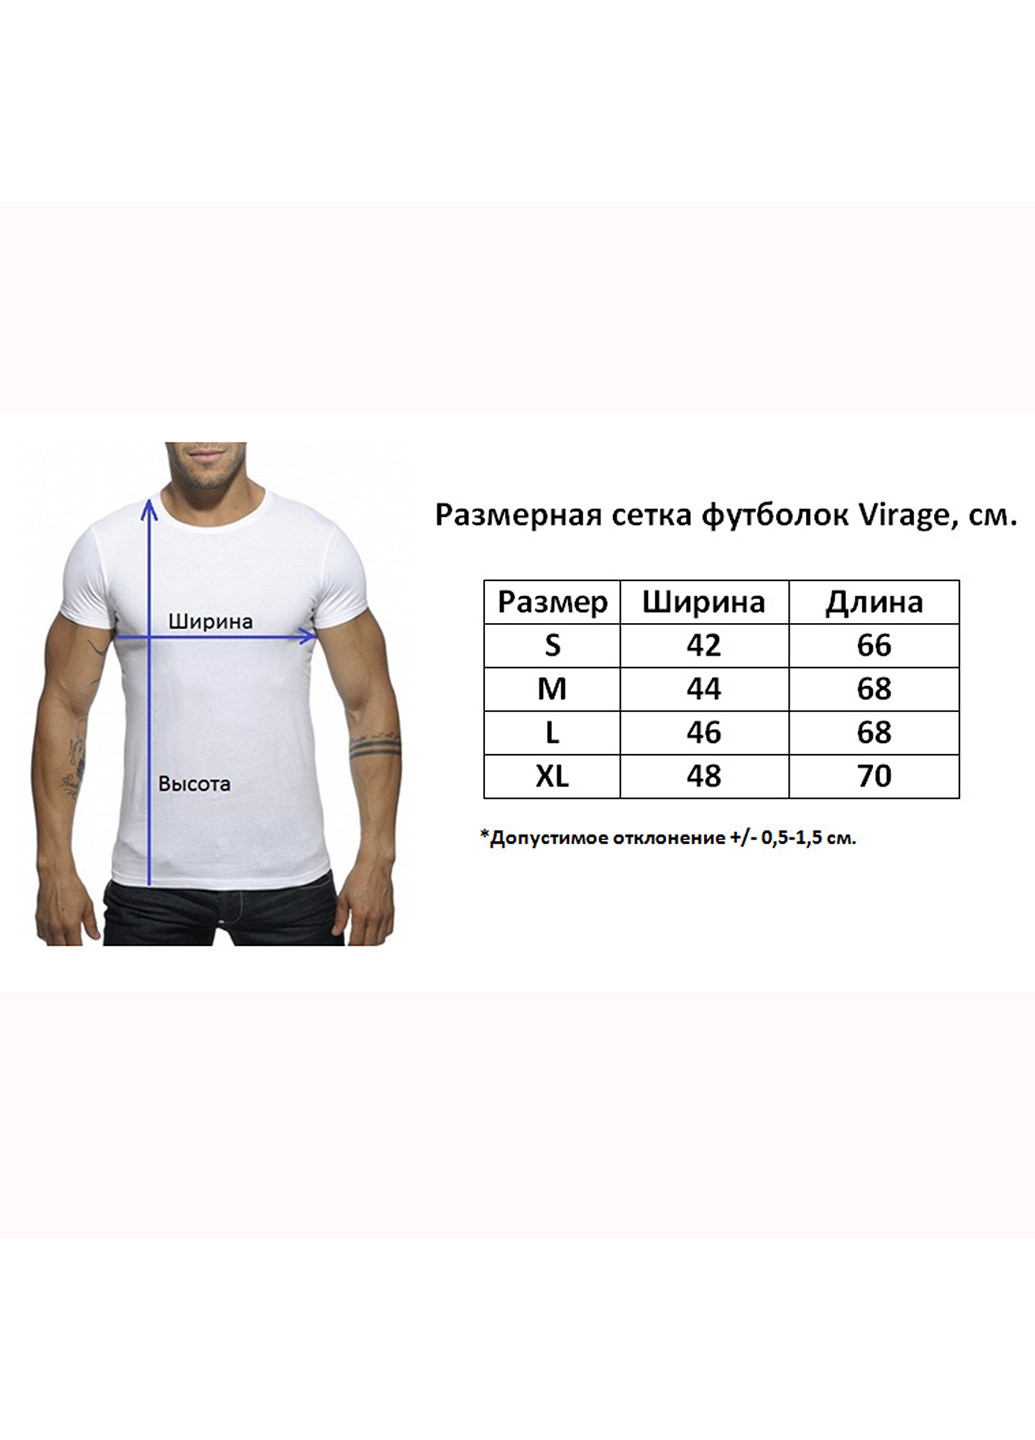 Хаки (оливковая) удлиненная мужская футболка с коротким рукавом Virage